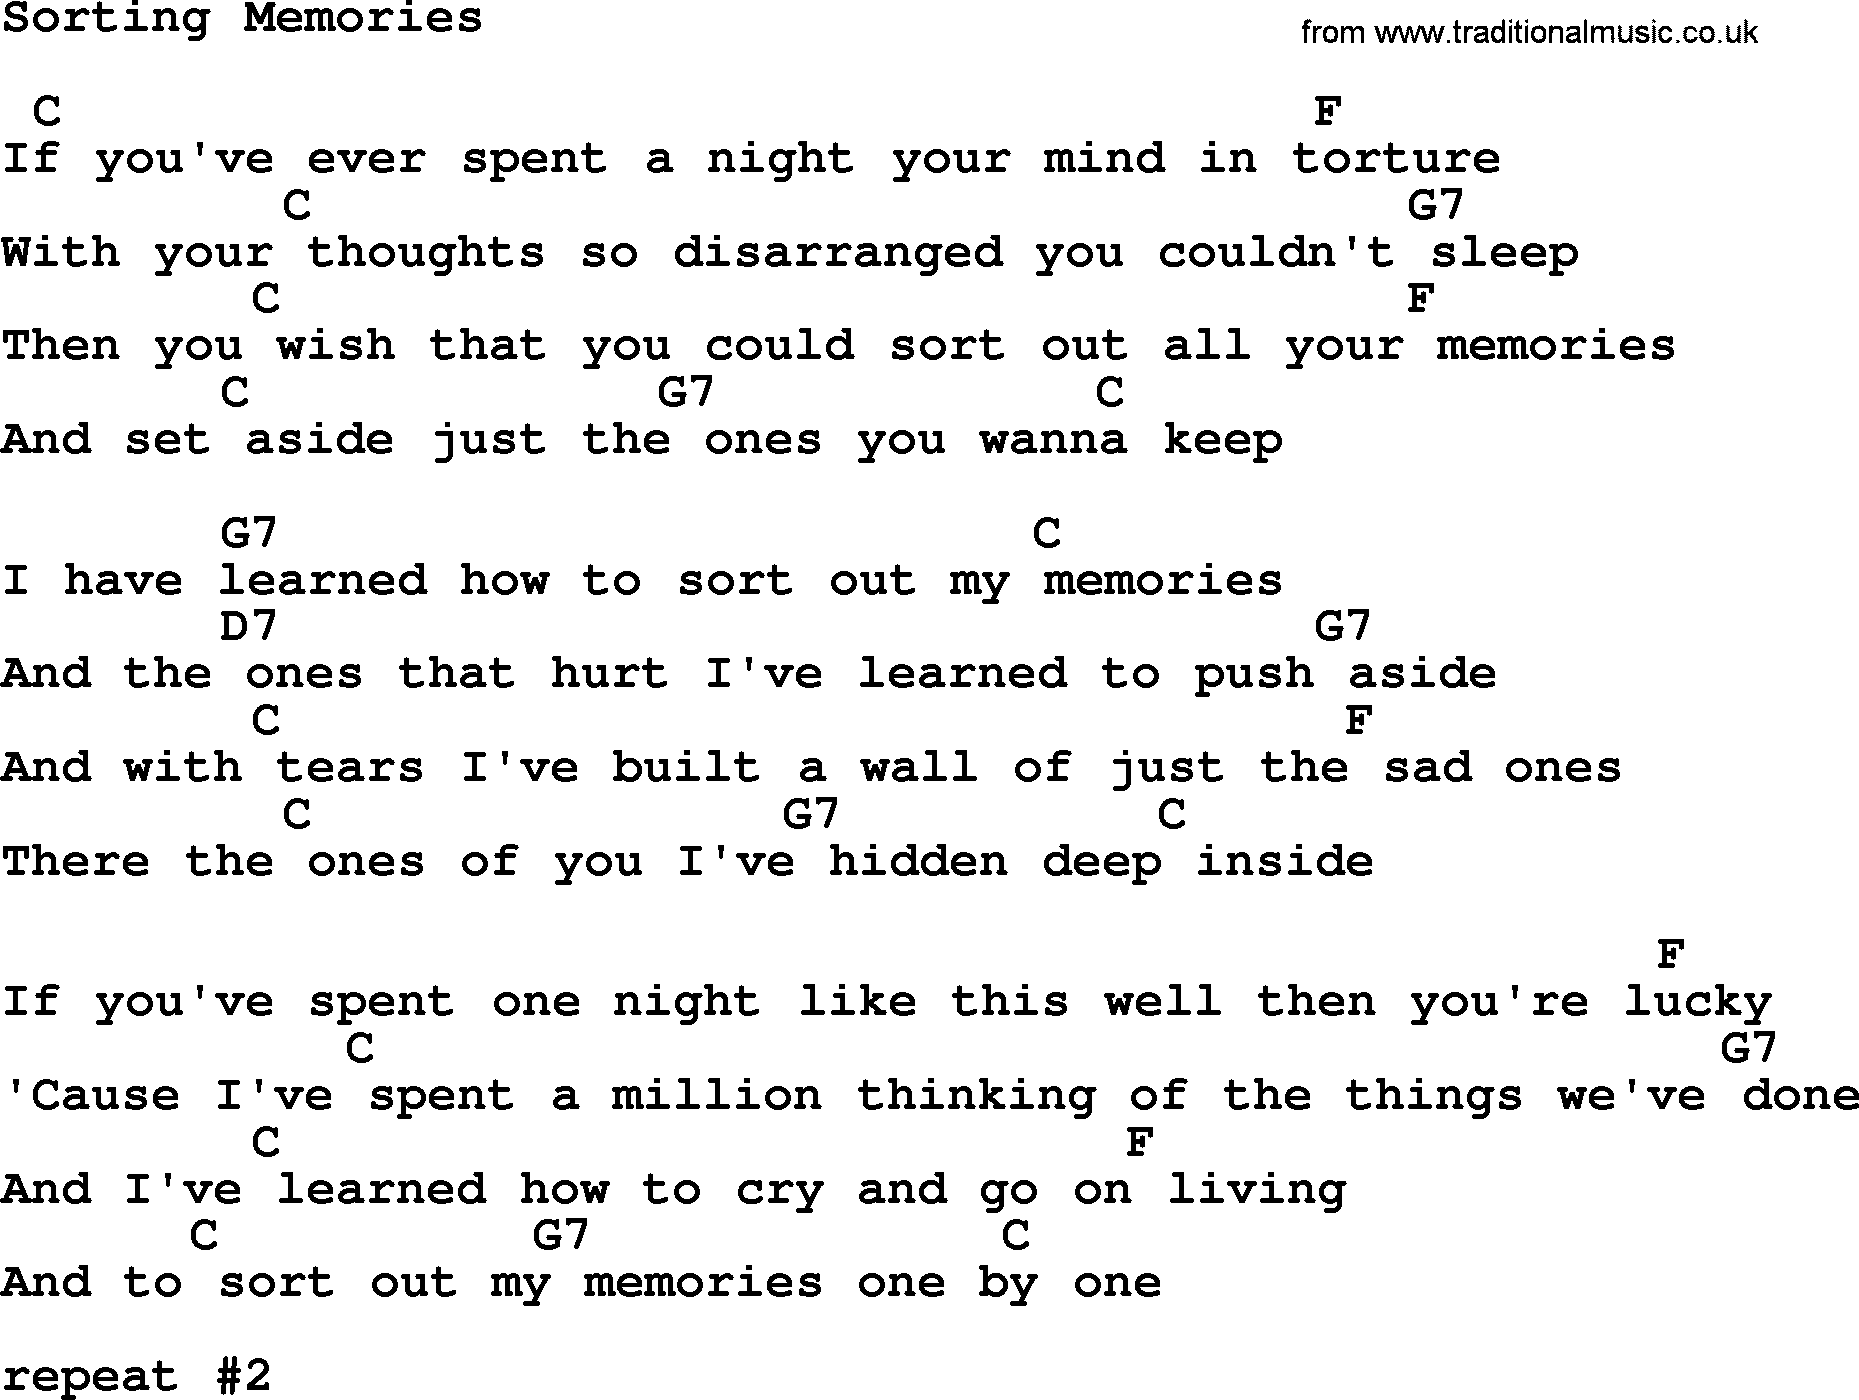 Marty Robbins song: Sorting Memories, lyrics and chords